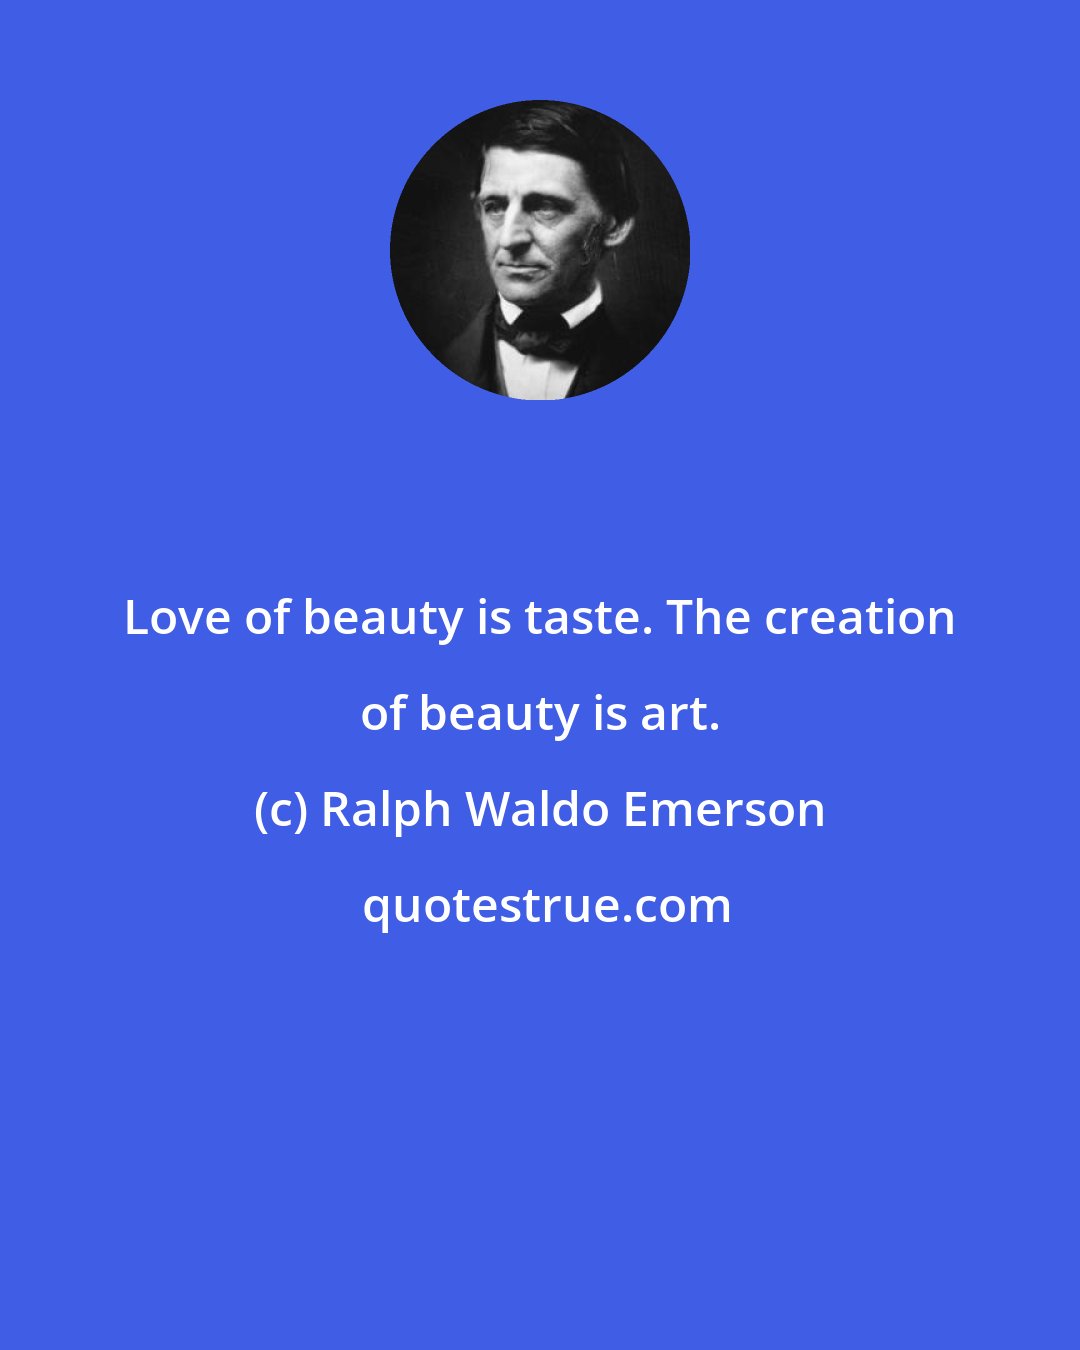 Ralph Waldo Emerson: Love of beauty is taste. The creation of beauty is art.